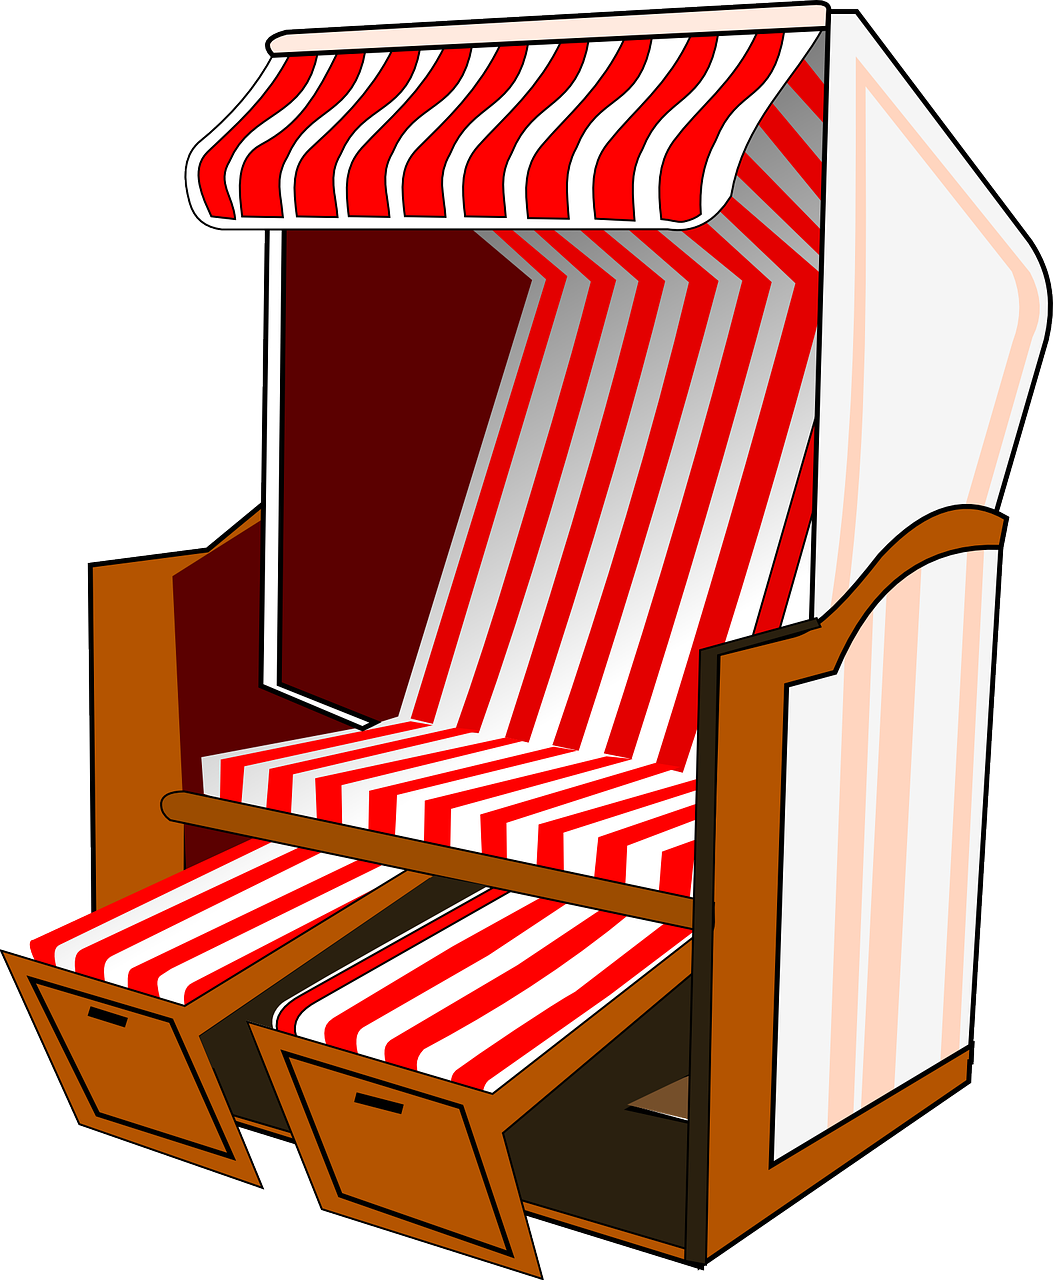 roofed wicker beach chair beach chair beach free photo